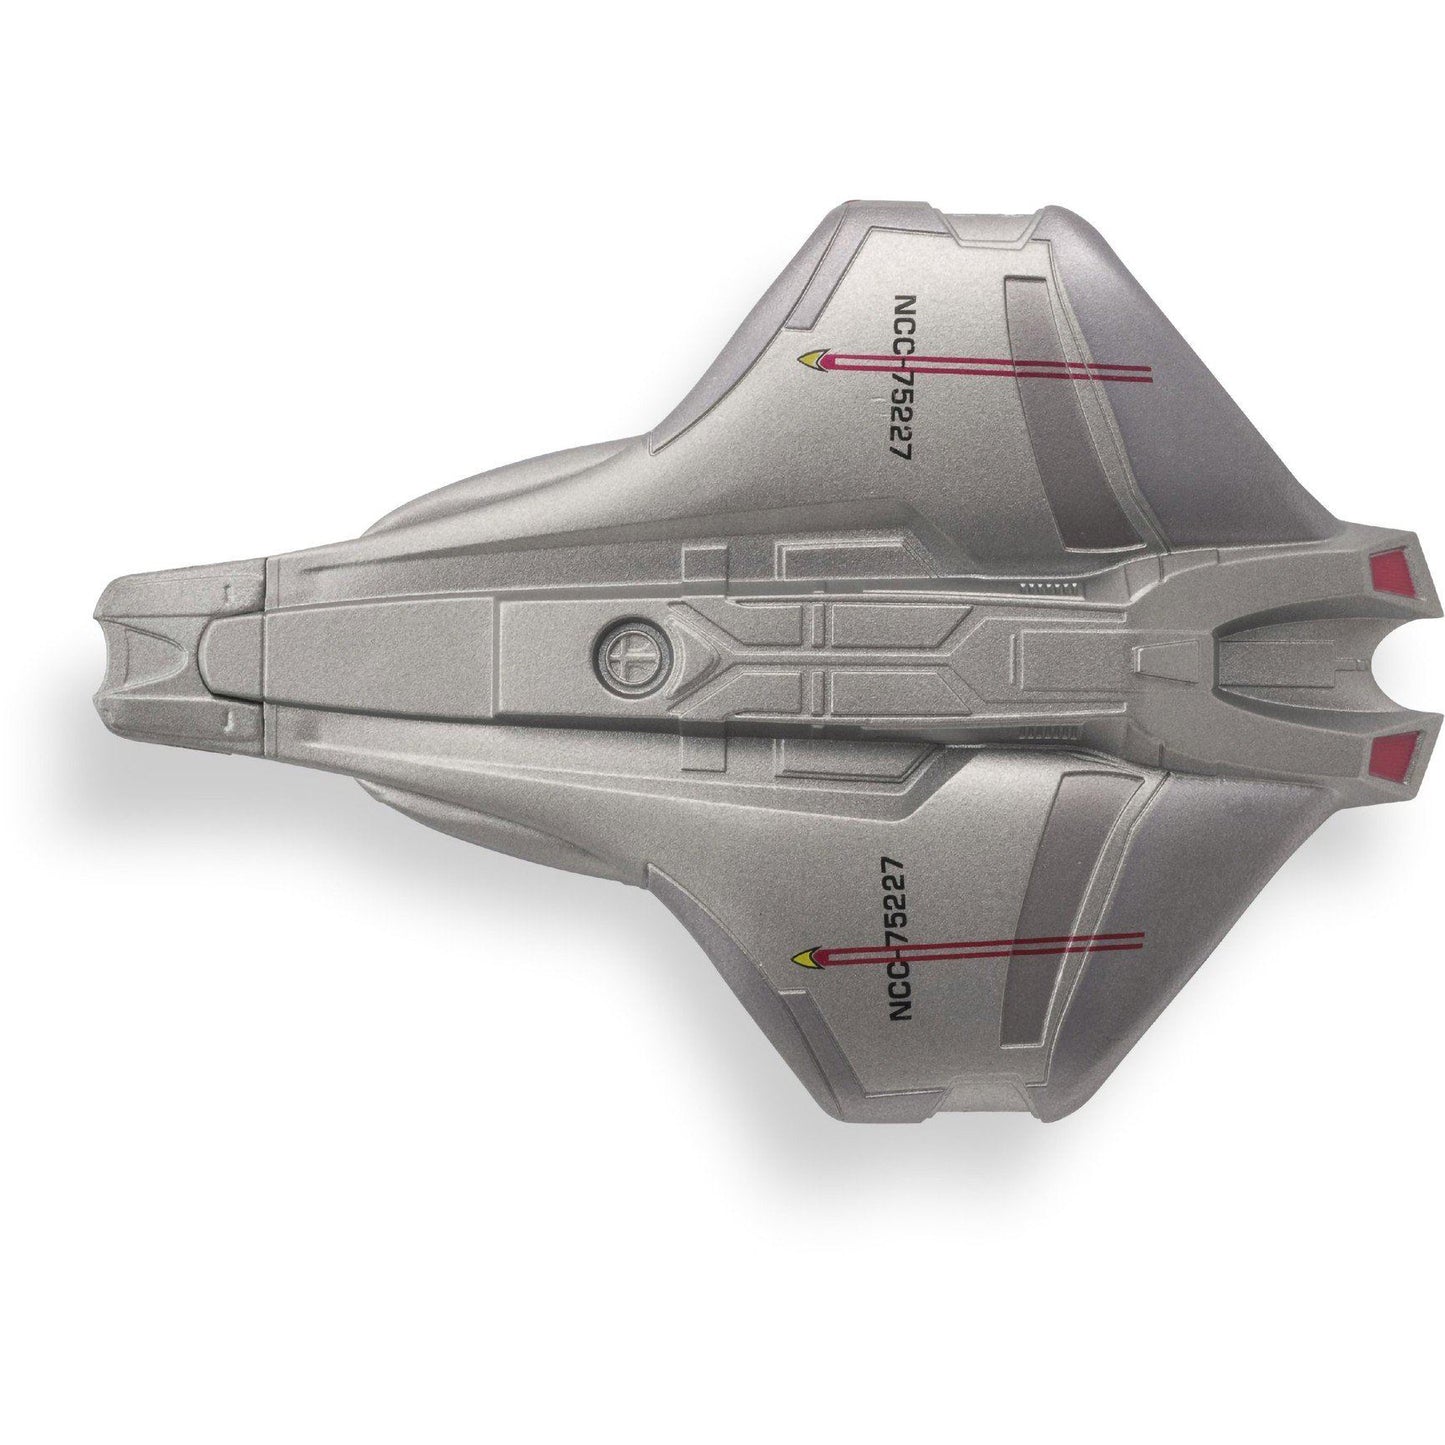 # 80 Modèle de navire Scout de la Fédération moulé sous pression (Star Trek)